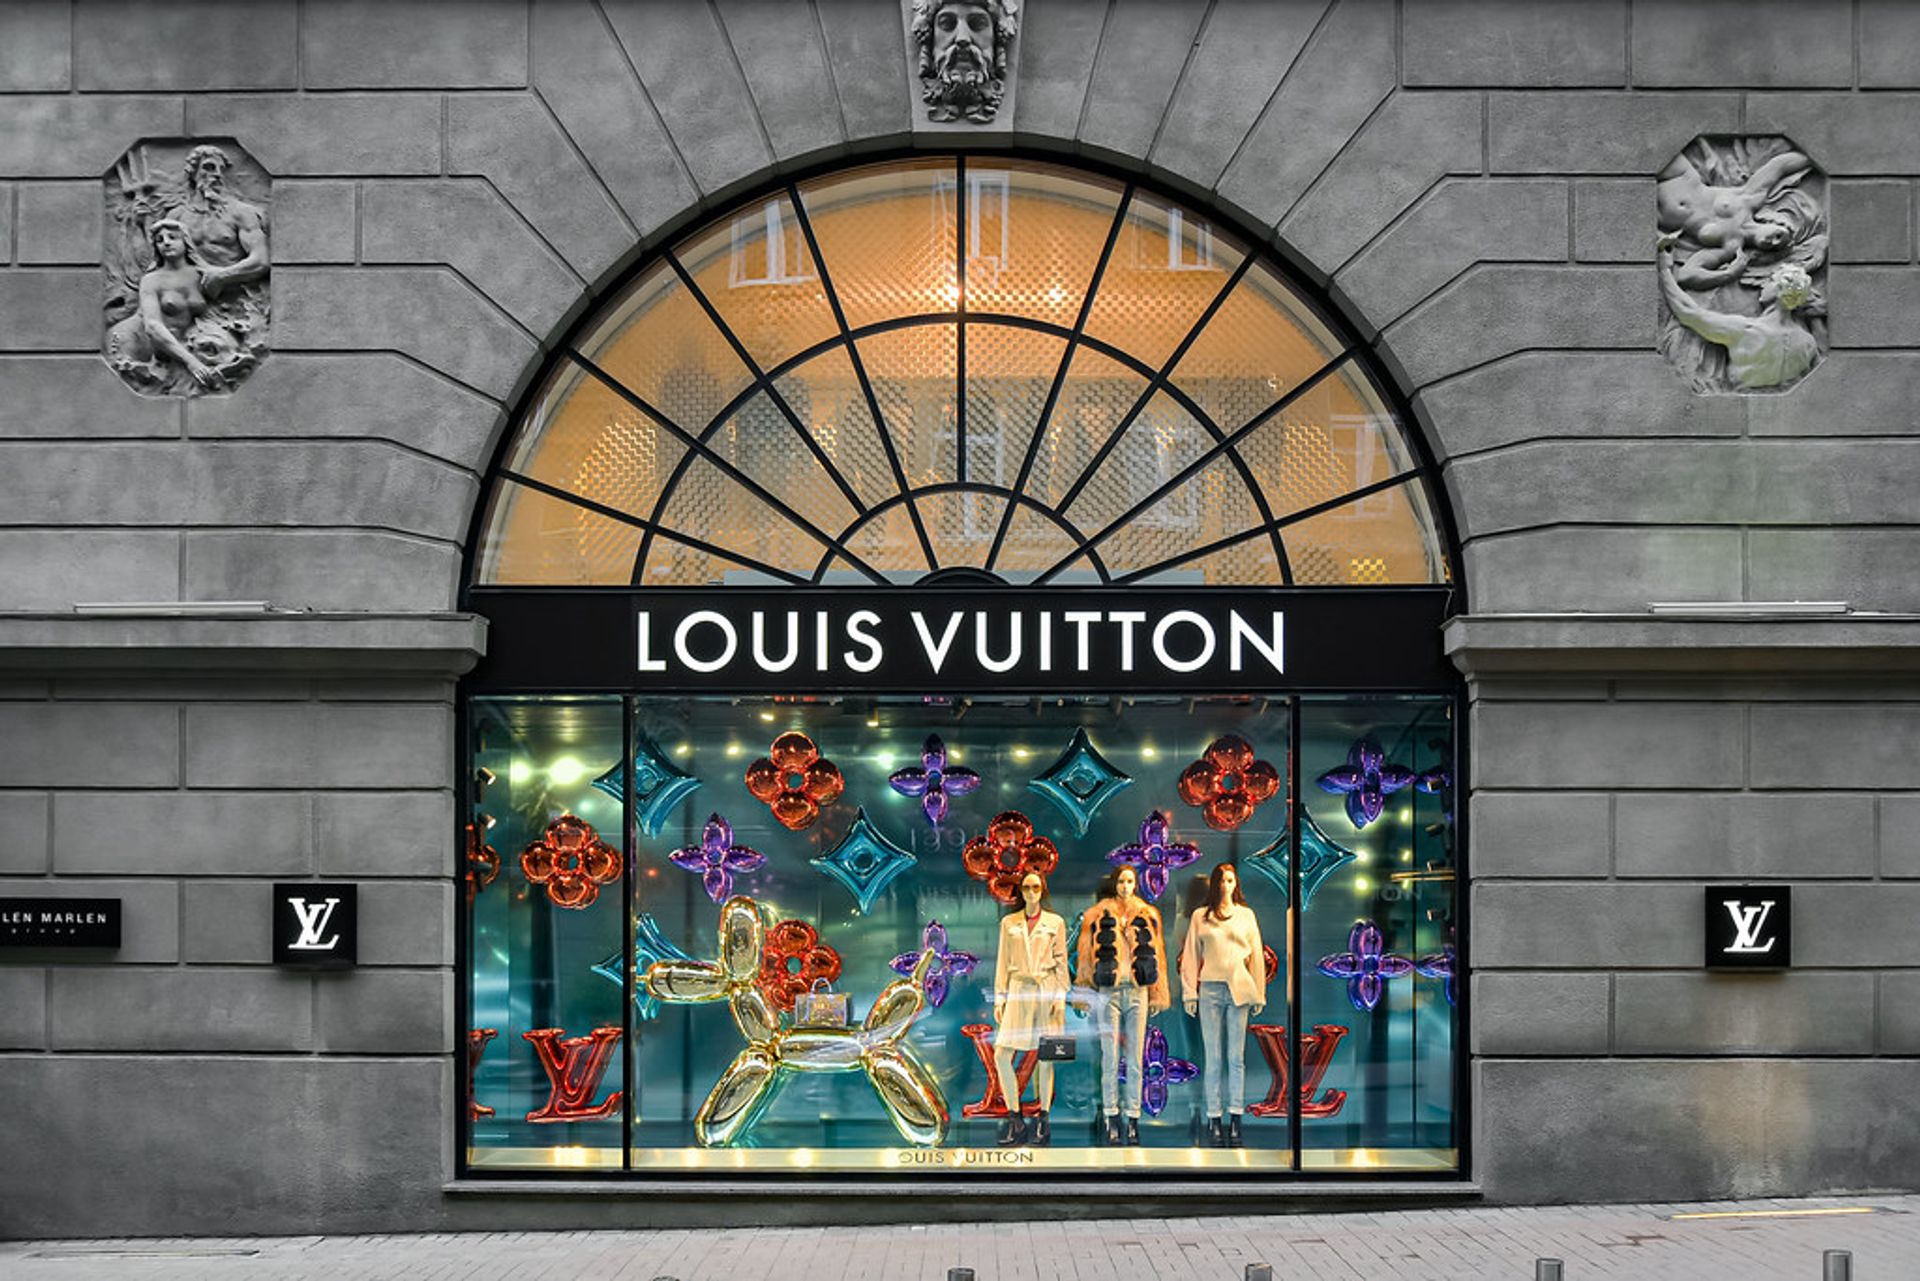 13-jarige verovert stage bij Louis Vuitton